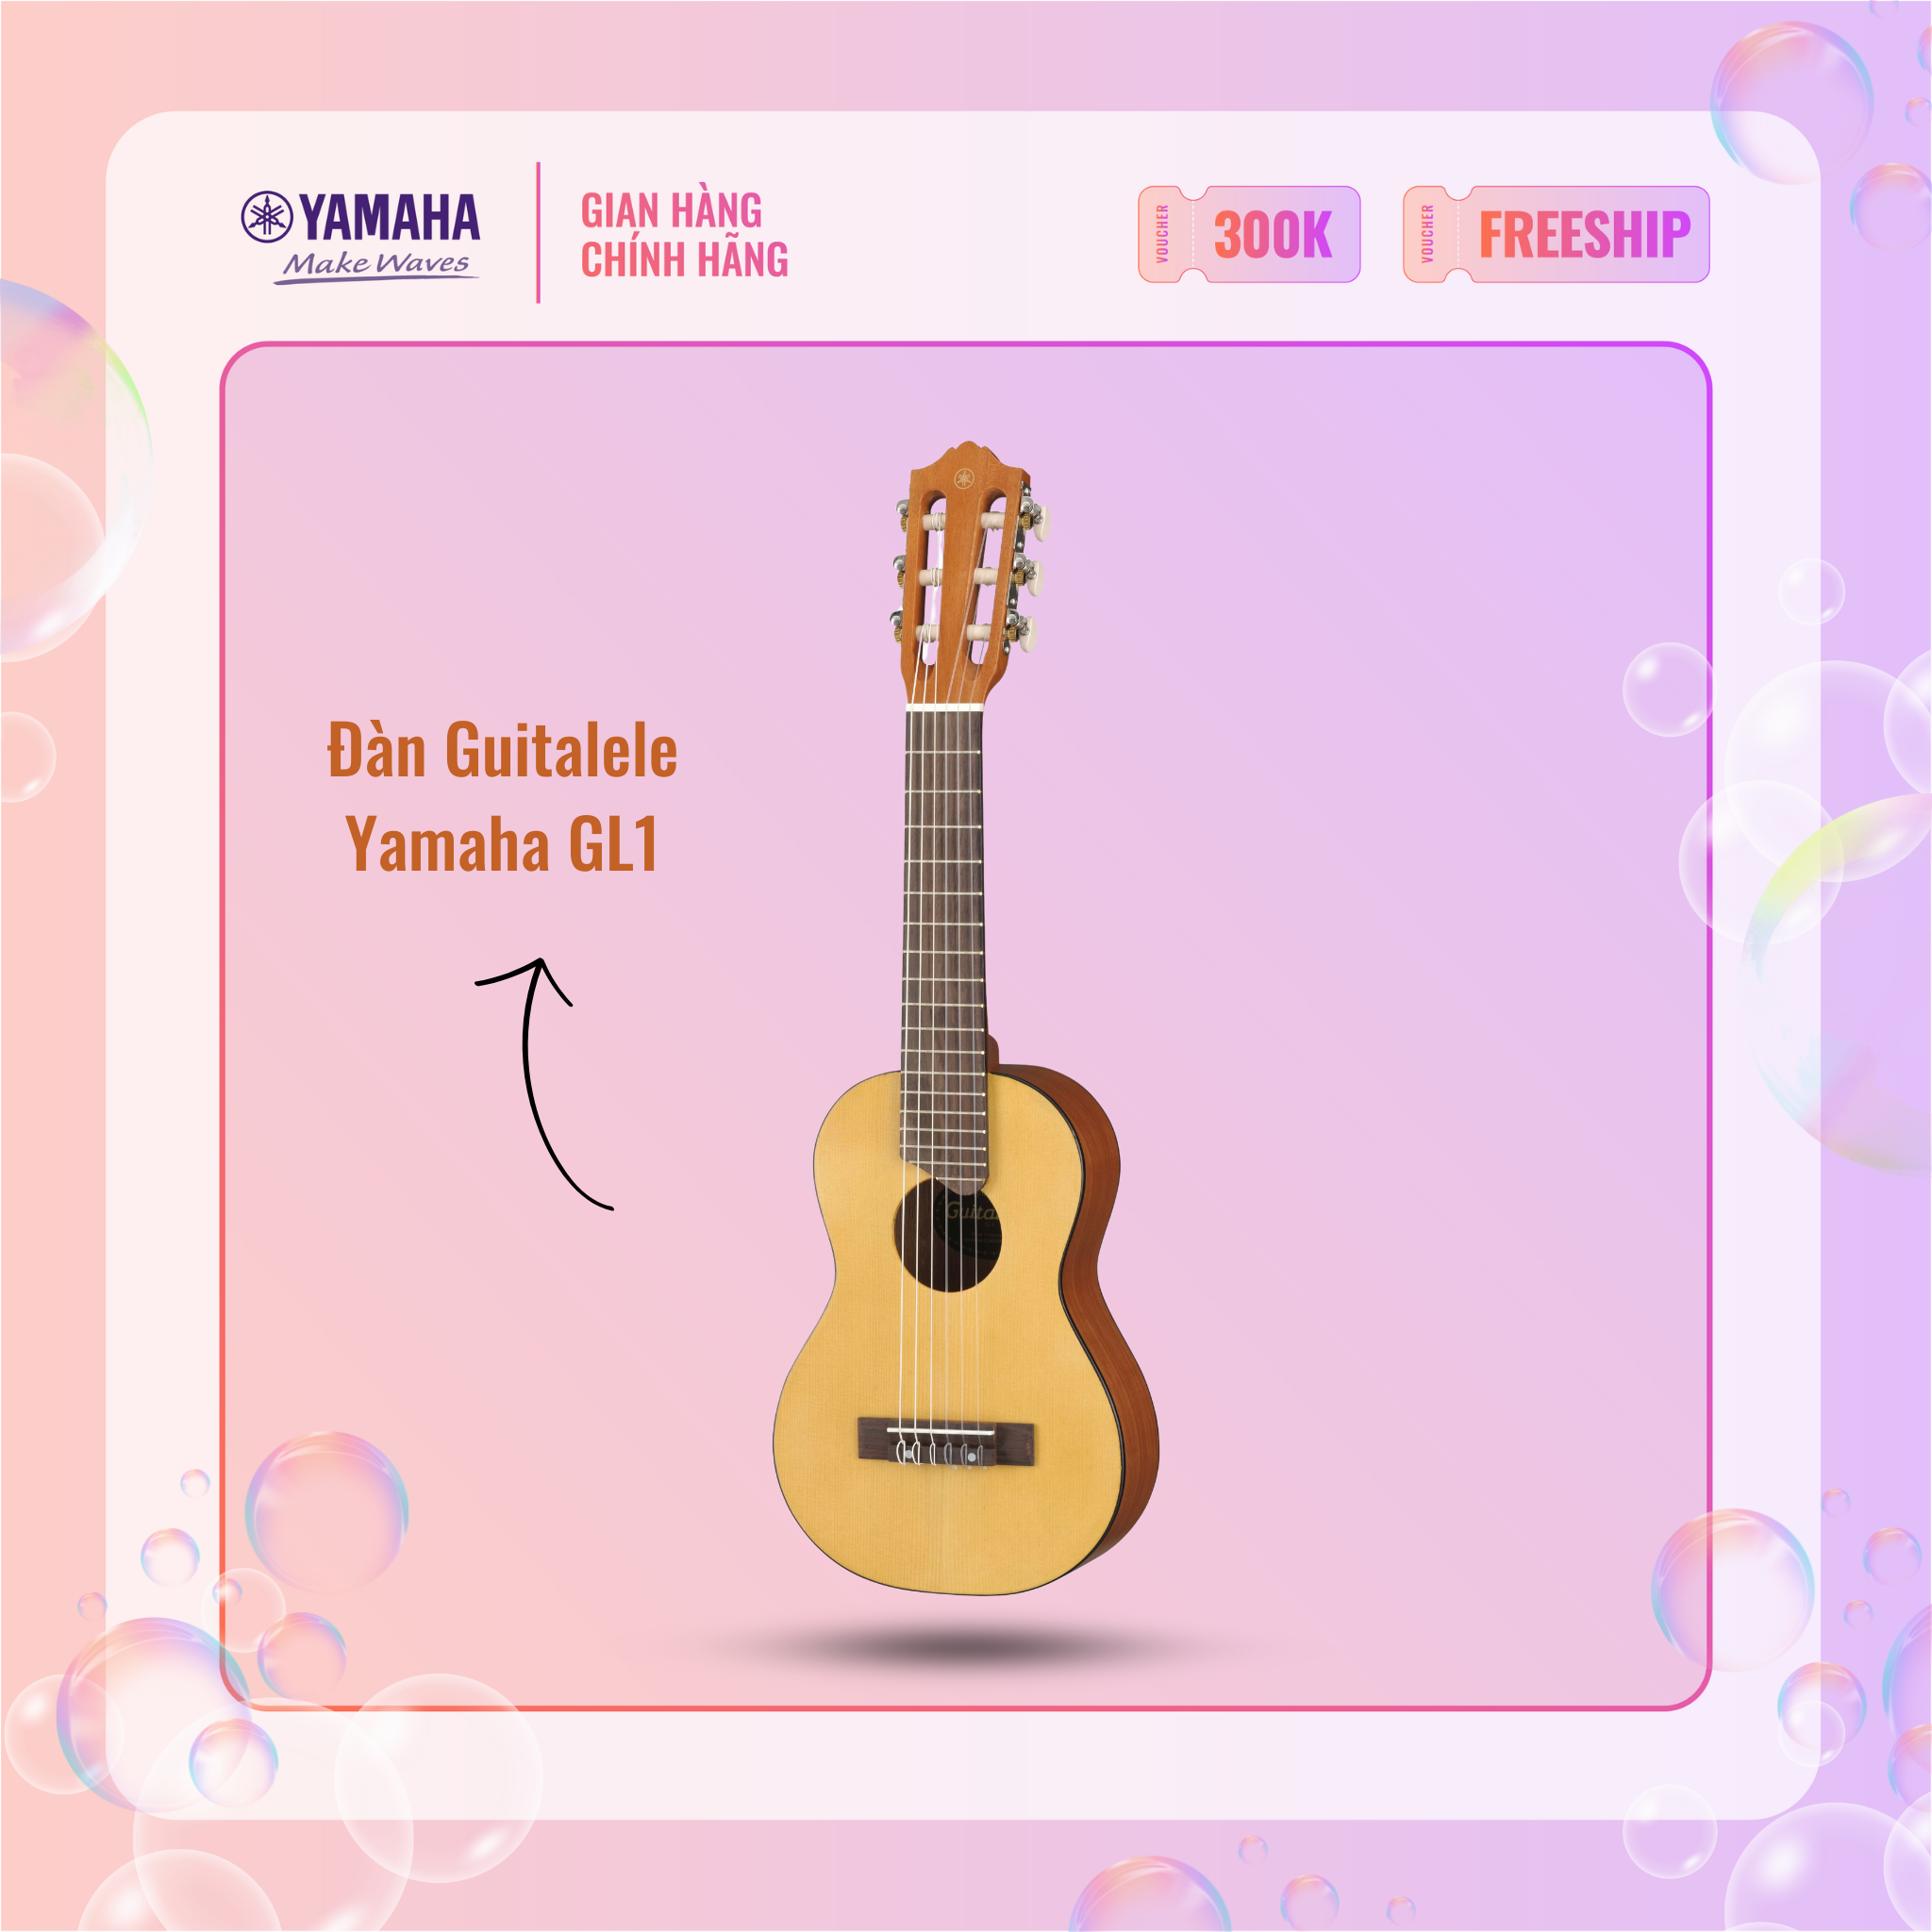 Đàn Guitalele YAMAHA GL1 kèm túi đựng - Guitar dây nylon theo phong cách Ukulele, mặt đàn gỗ vân sam, nhỏ gọn, sản phẩm chính hãng